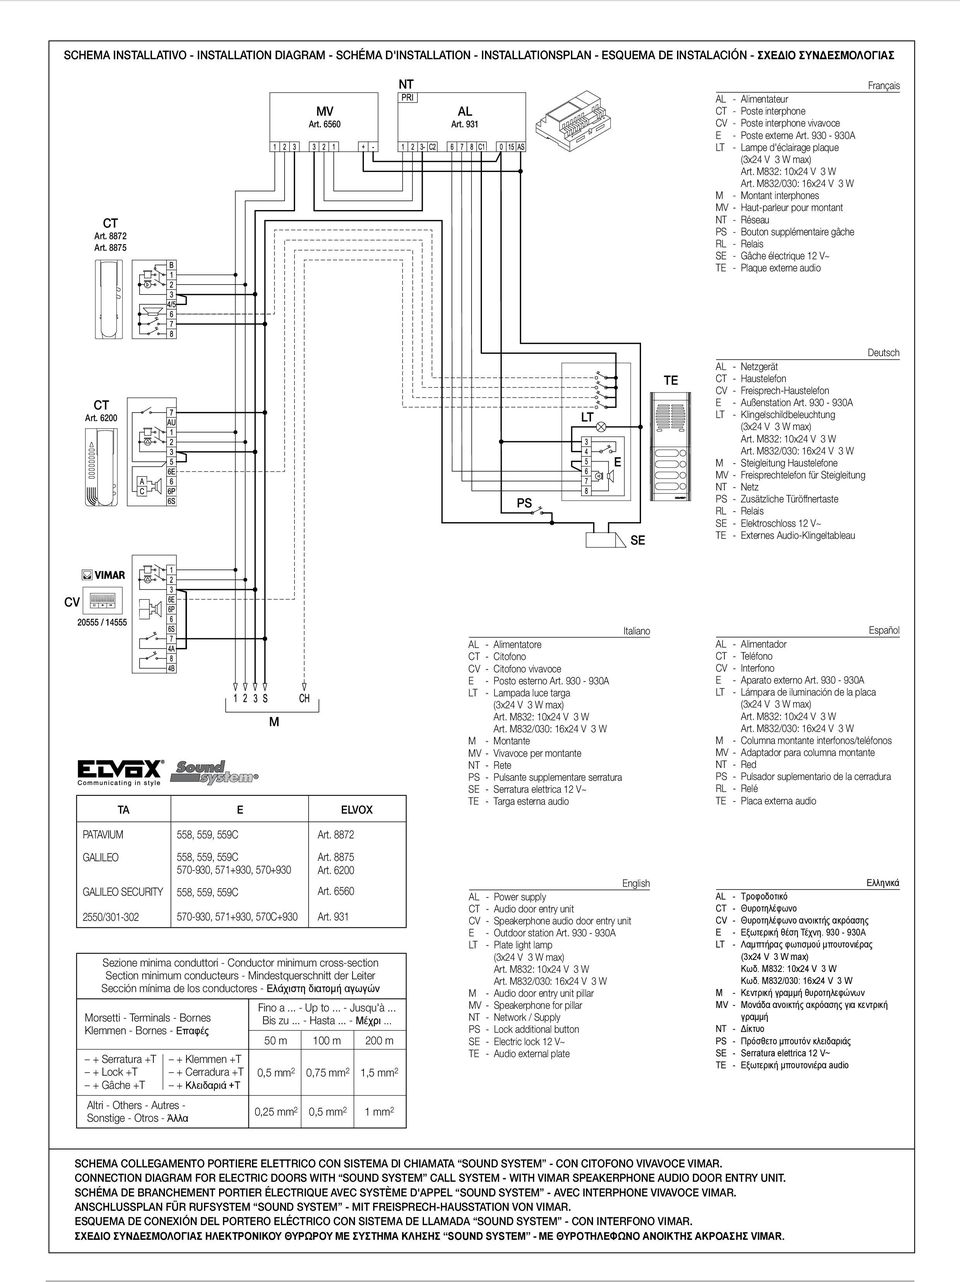 930-930A LT - Lampe d'éclairage plaque M - Montant interphones MV - Haut-parleur pour montant NT - Réseau PS - Bouton supplémentaire gâche SE - Gâche électrique 12 V~ TE - Plaque externe audio